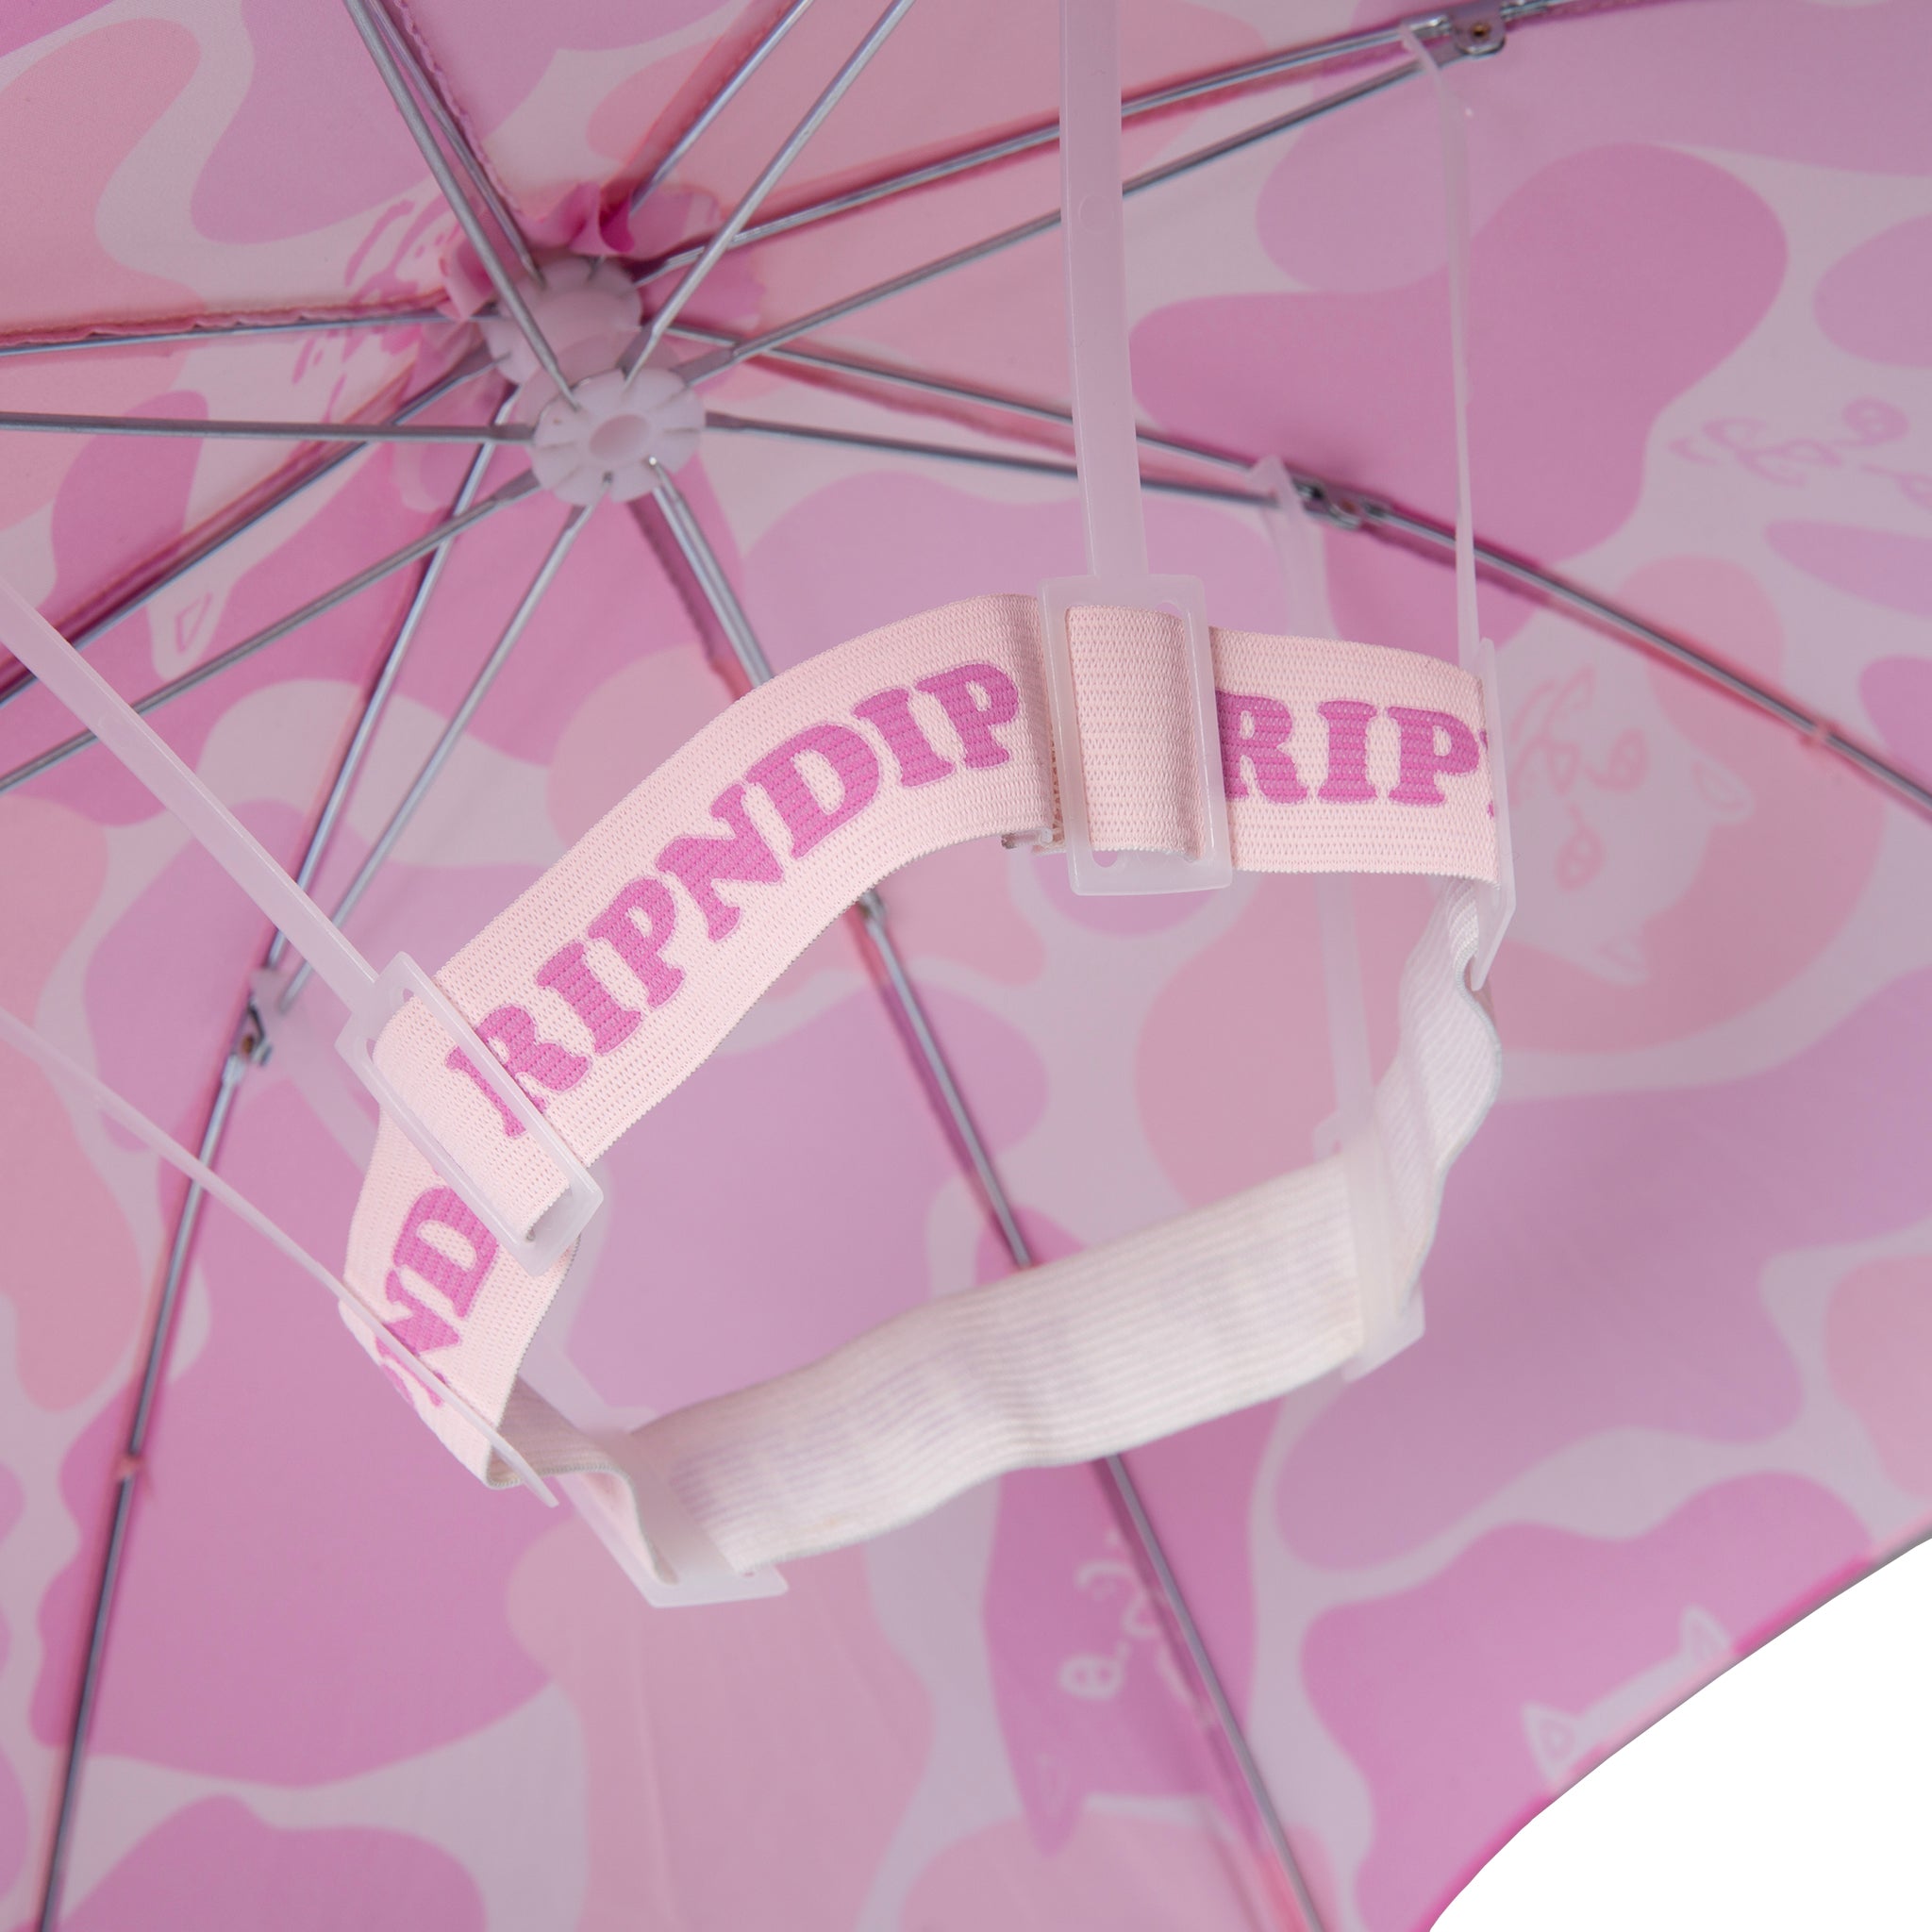 Camo Umbrella Hat (Pink)